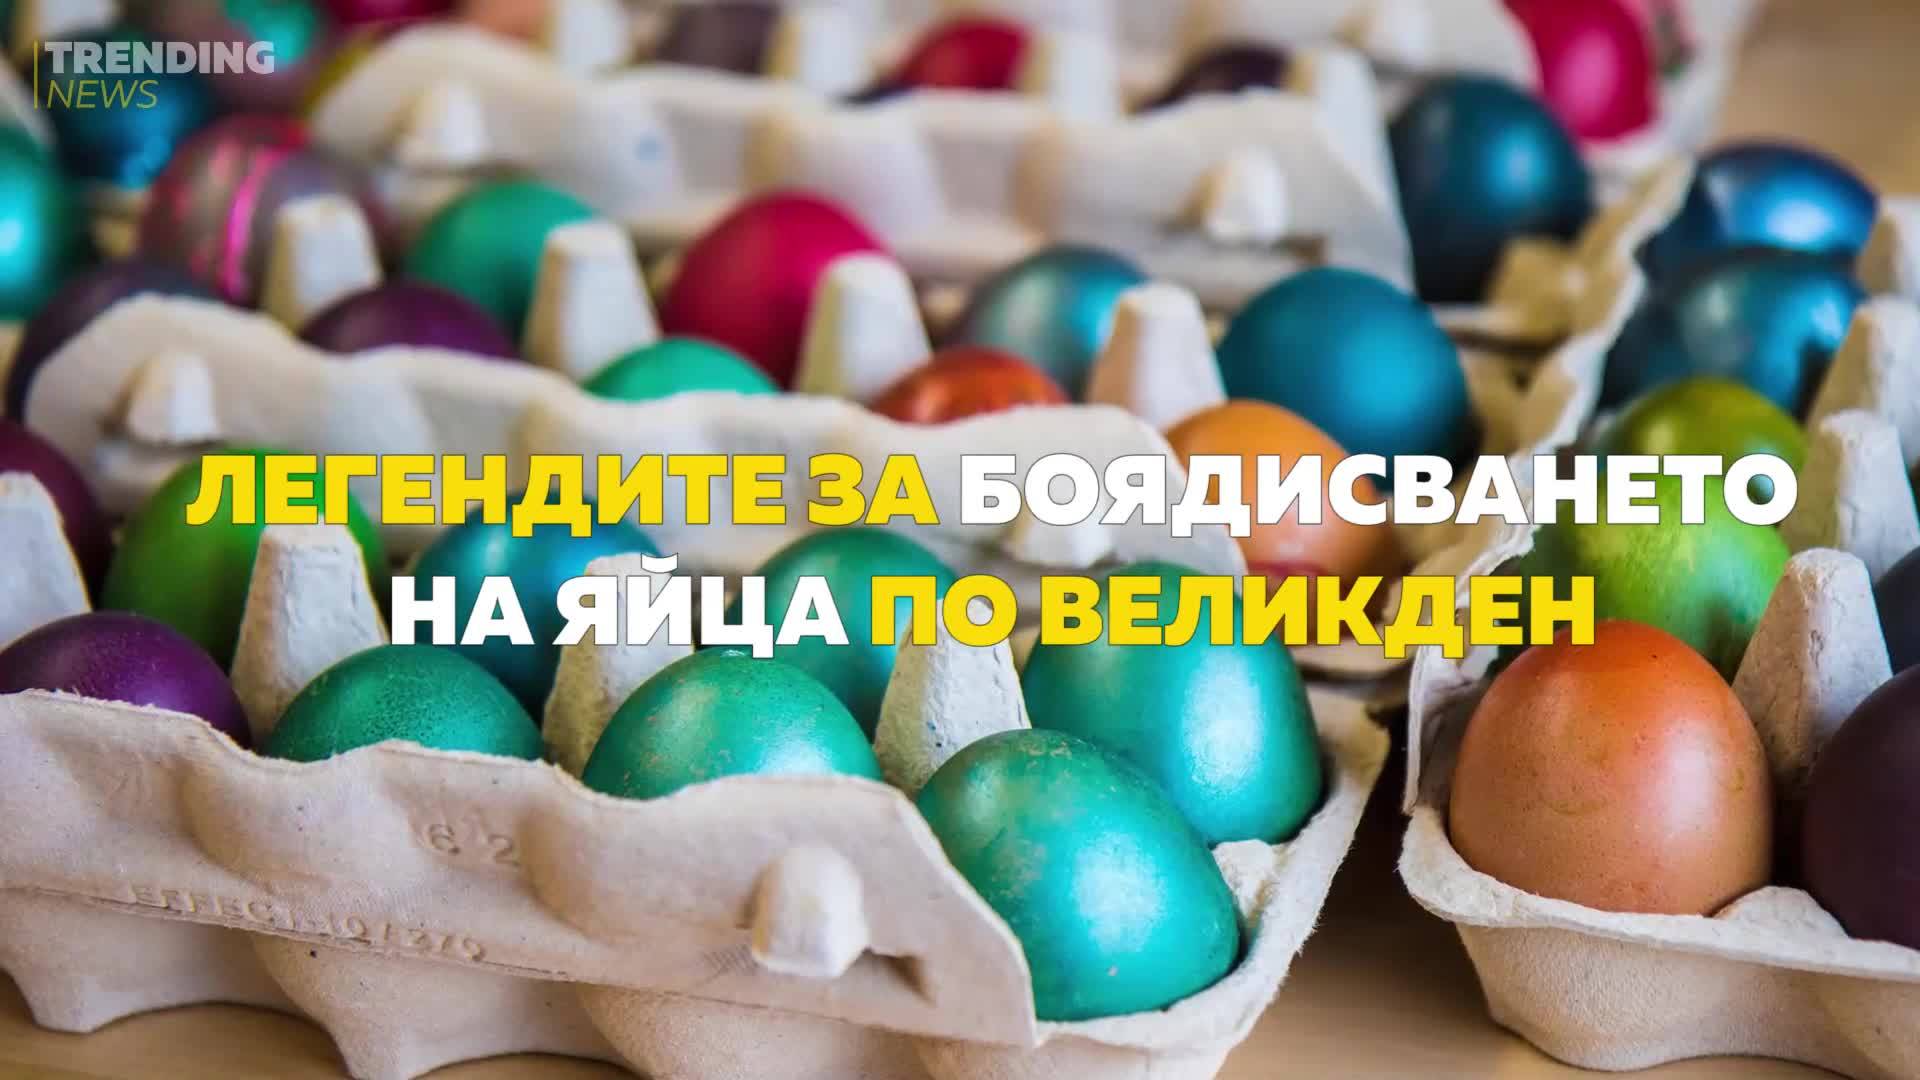 Легендите за боядисването на яйца по Великден